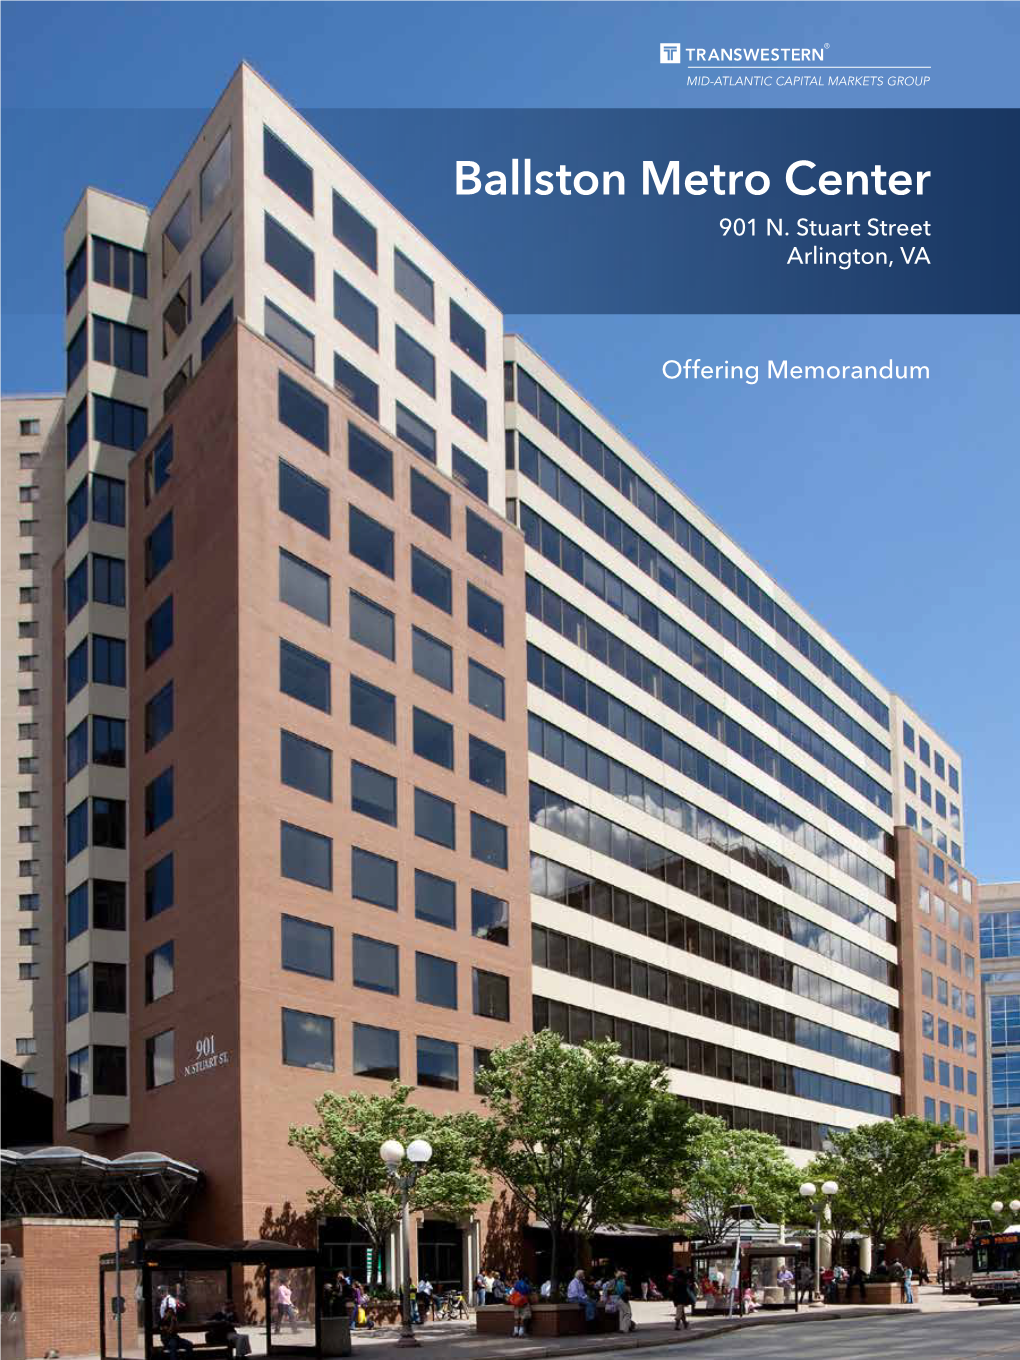 Ballston Metro Center 901 N